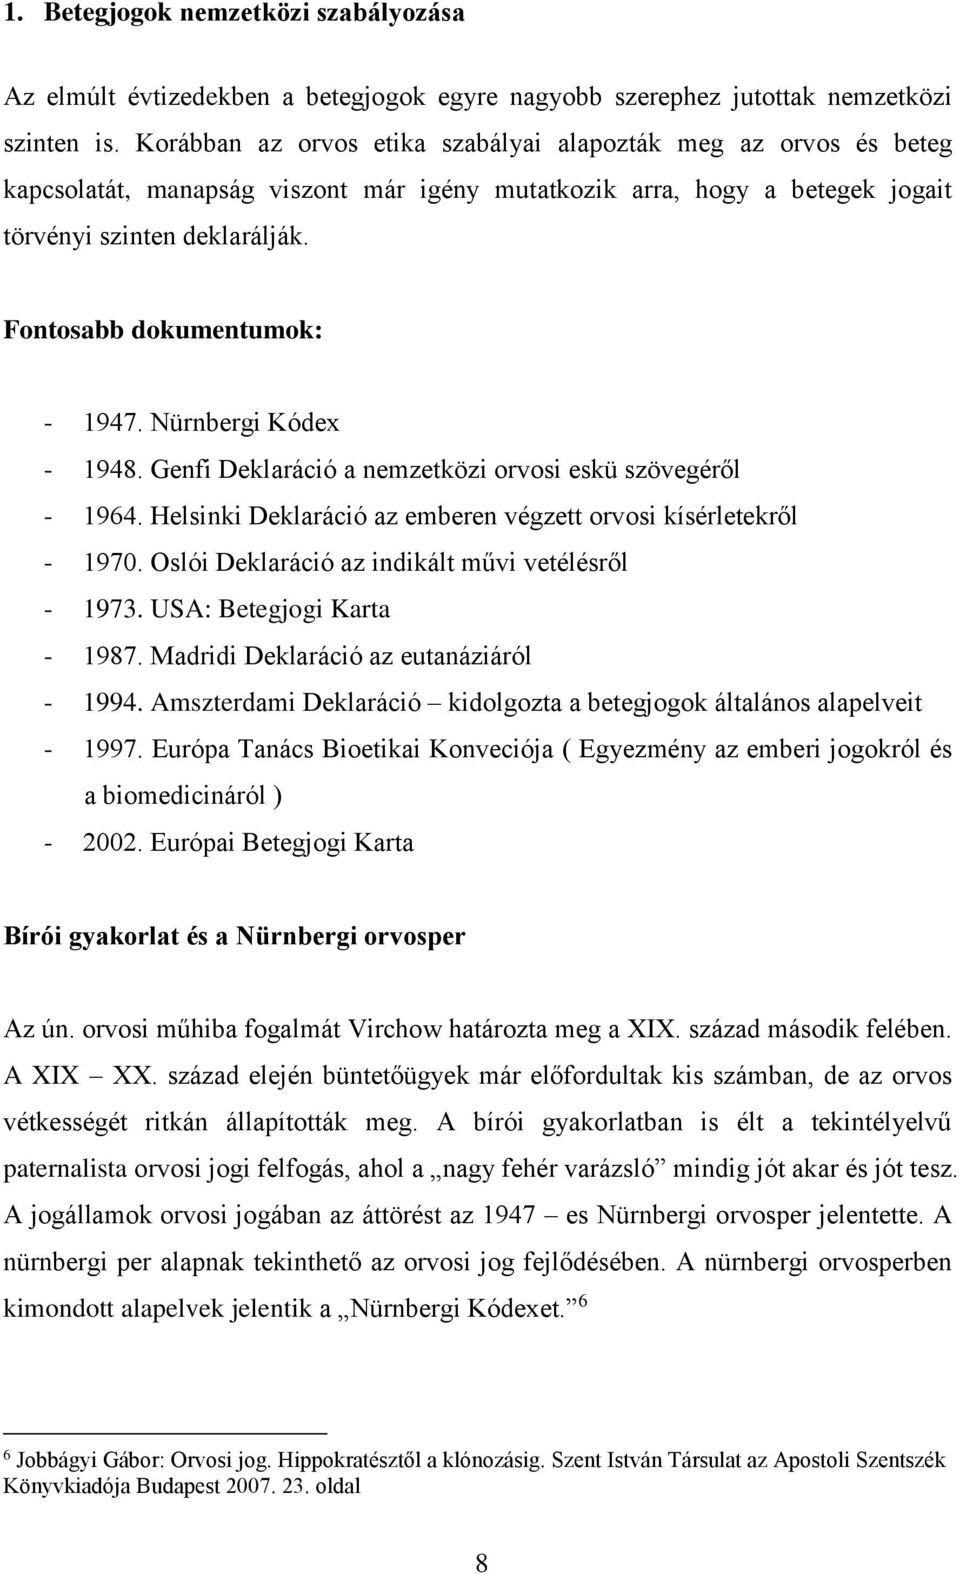 Fontosabb dokumentumok: - 1947. Nürnbergi Kódex - 1948. Genfi Deklaráció a nemzetközi orvosi eskü szövegéről - 1964. Helsinki Deklaráció az emberen végzett orvosi kísérletekről - 1970.